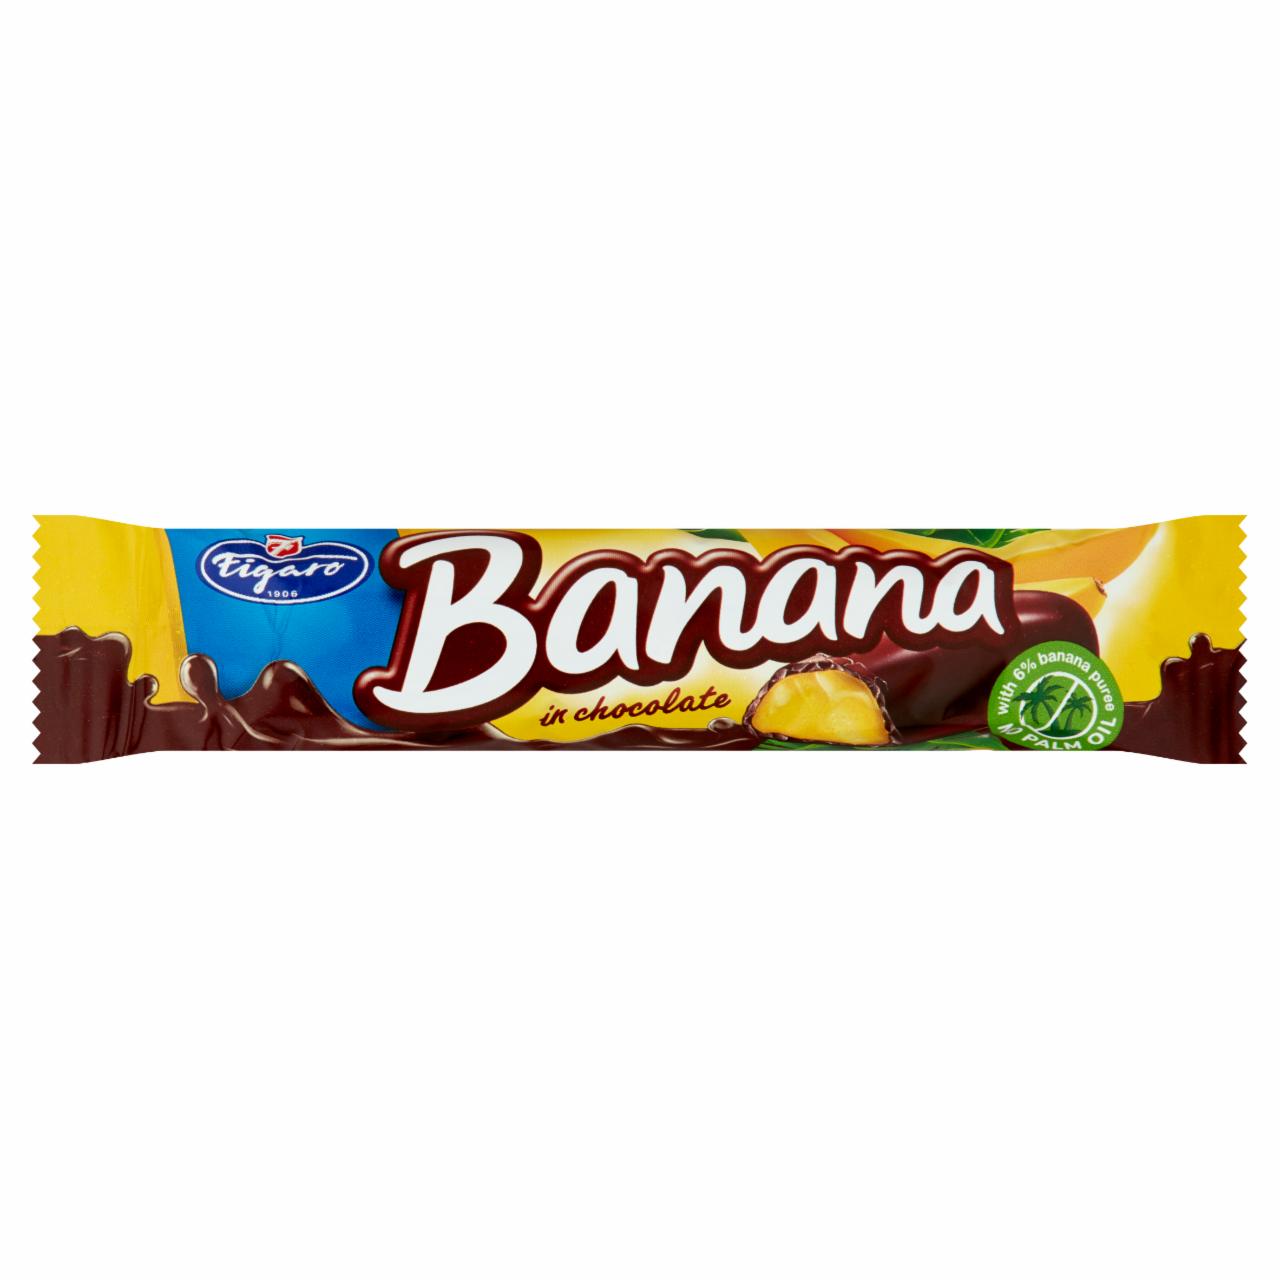 Képek - Figaro étcsokoládéval bevont banános habos zselé szelet 25 g